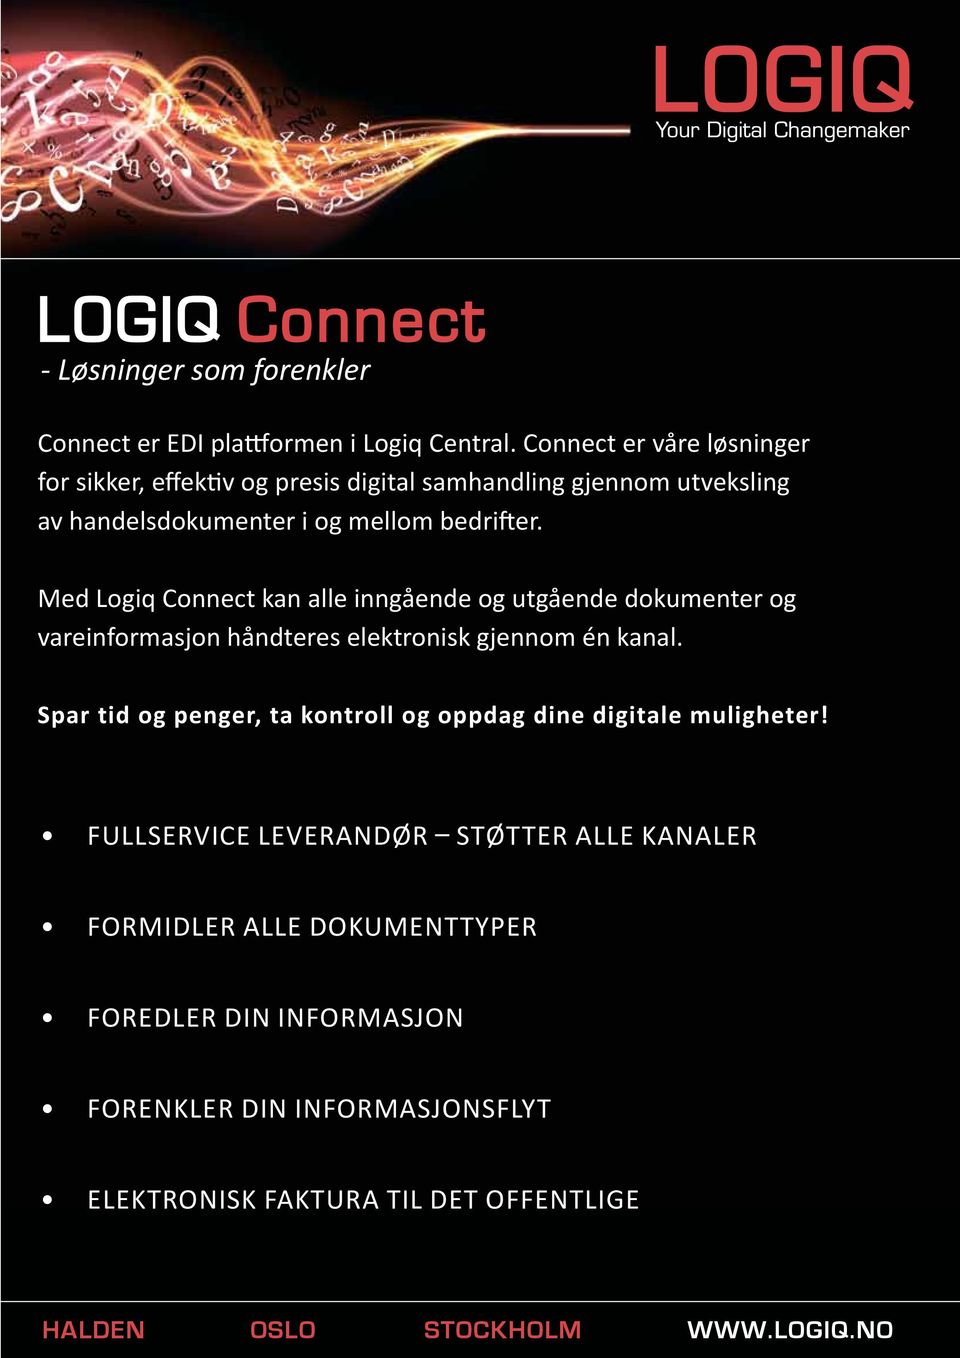 Med Logiq Connect kan alle inngående og utgående dokumenter og vareinformasjon håndteres elektronisk gjennom én kanal.